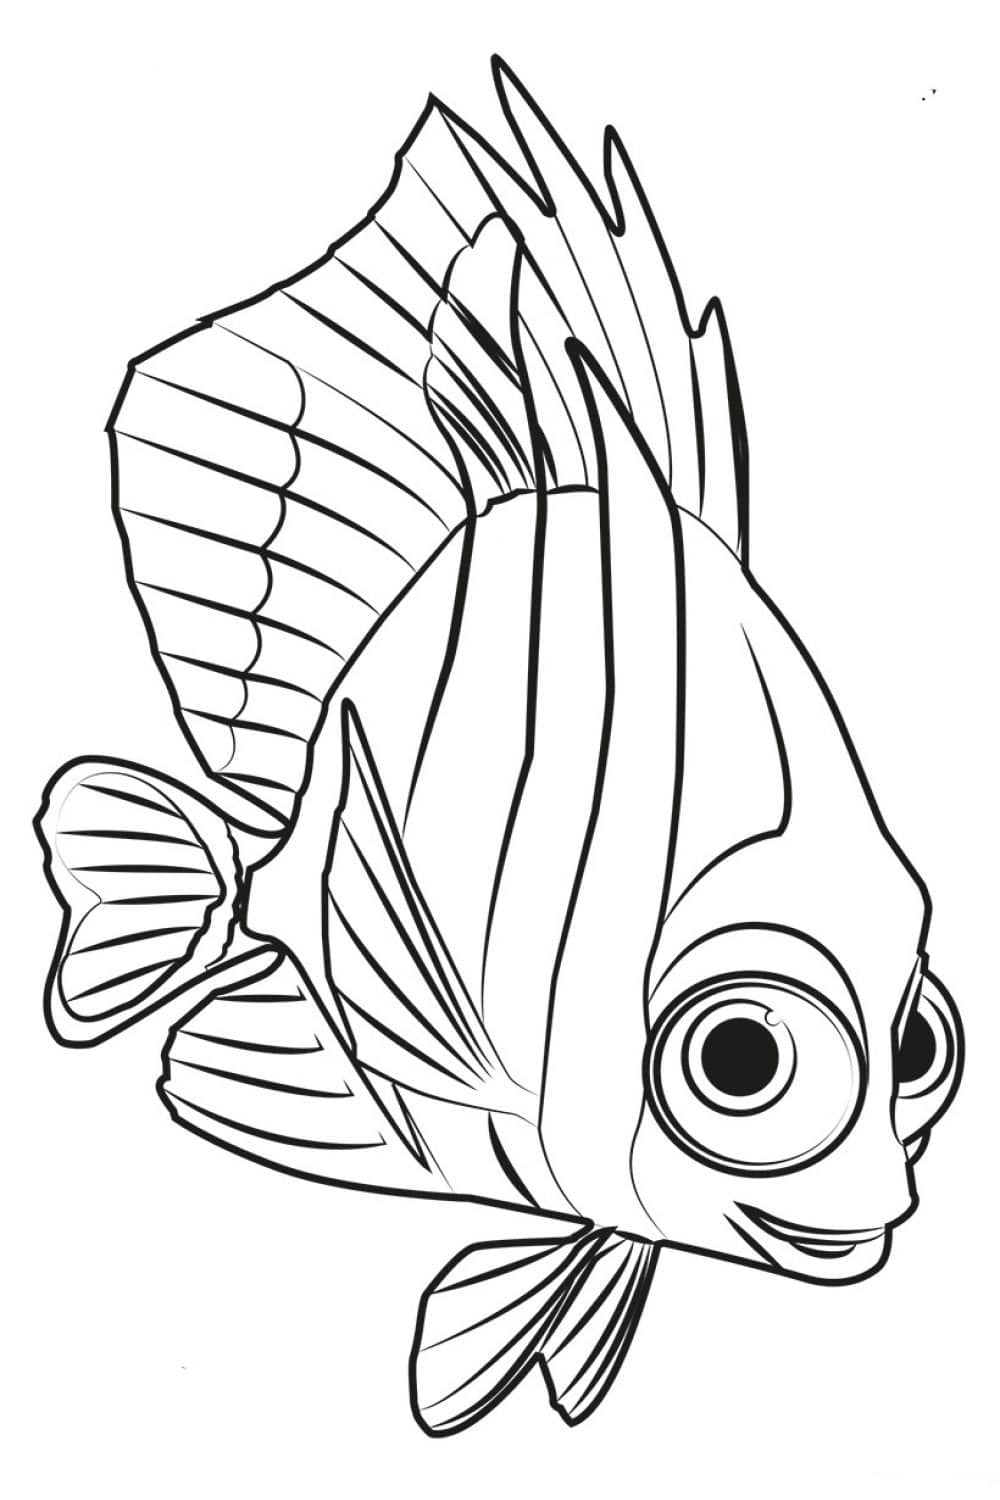 דף צביעה ציור עם דג חמוד לצביעה ולהדפסה